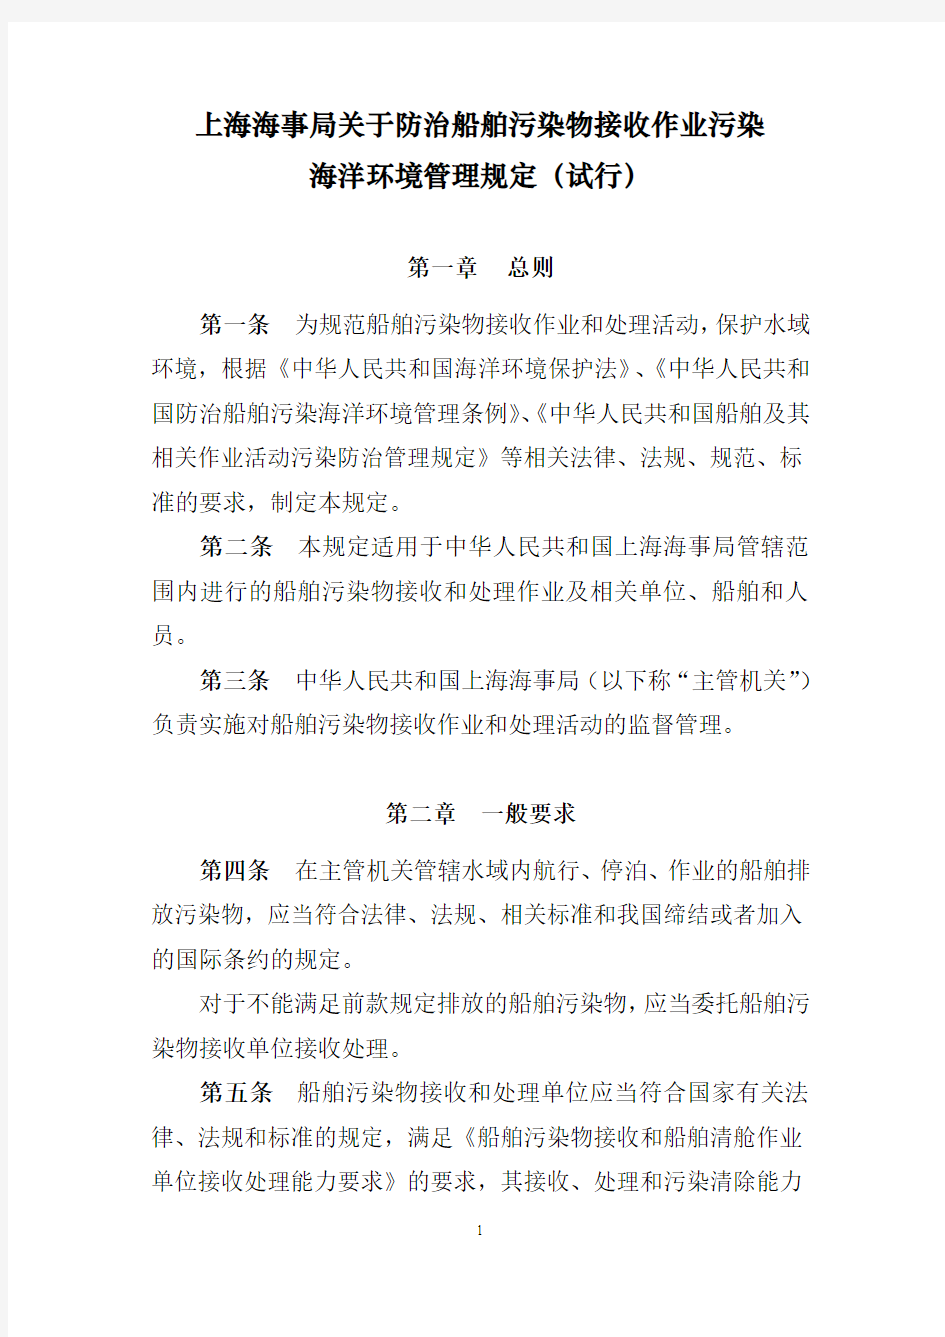 上海海事局关于防治船舶污染物接收作业污染海洋环境管理规定(试行)